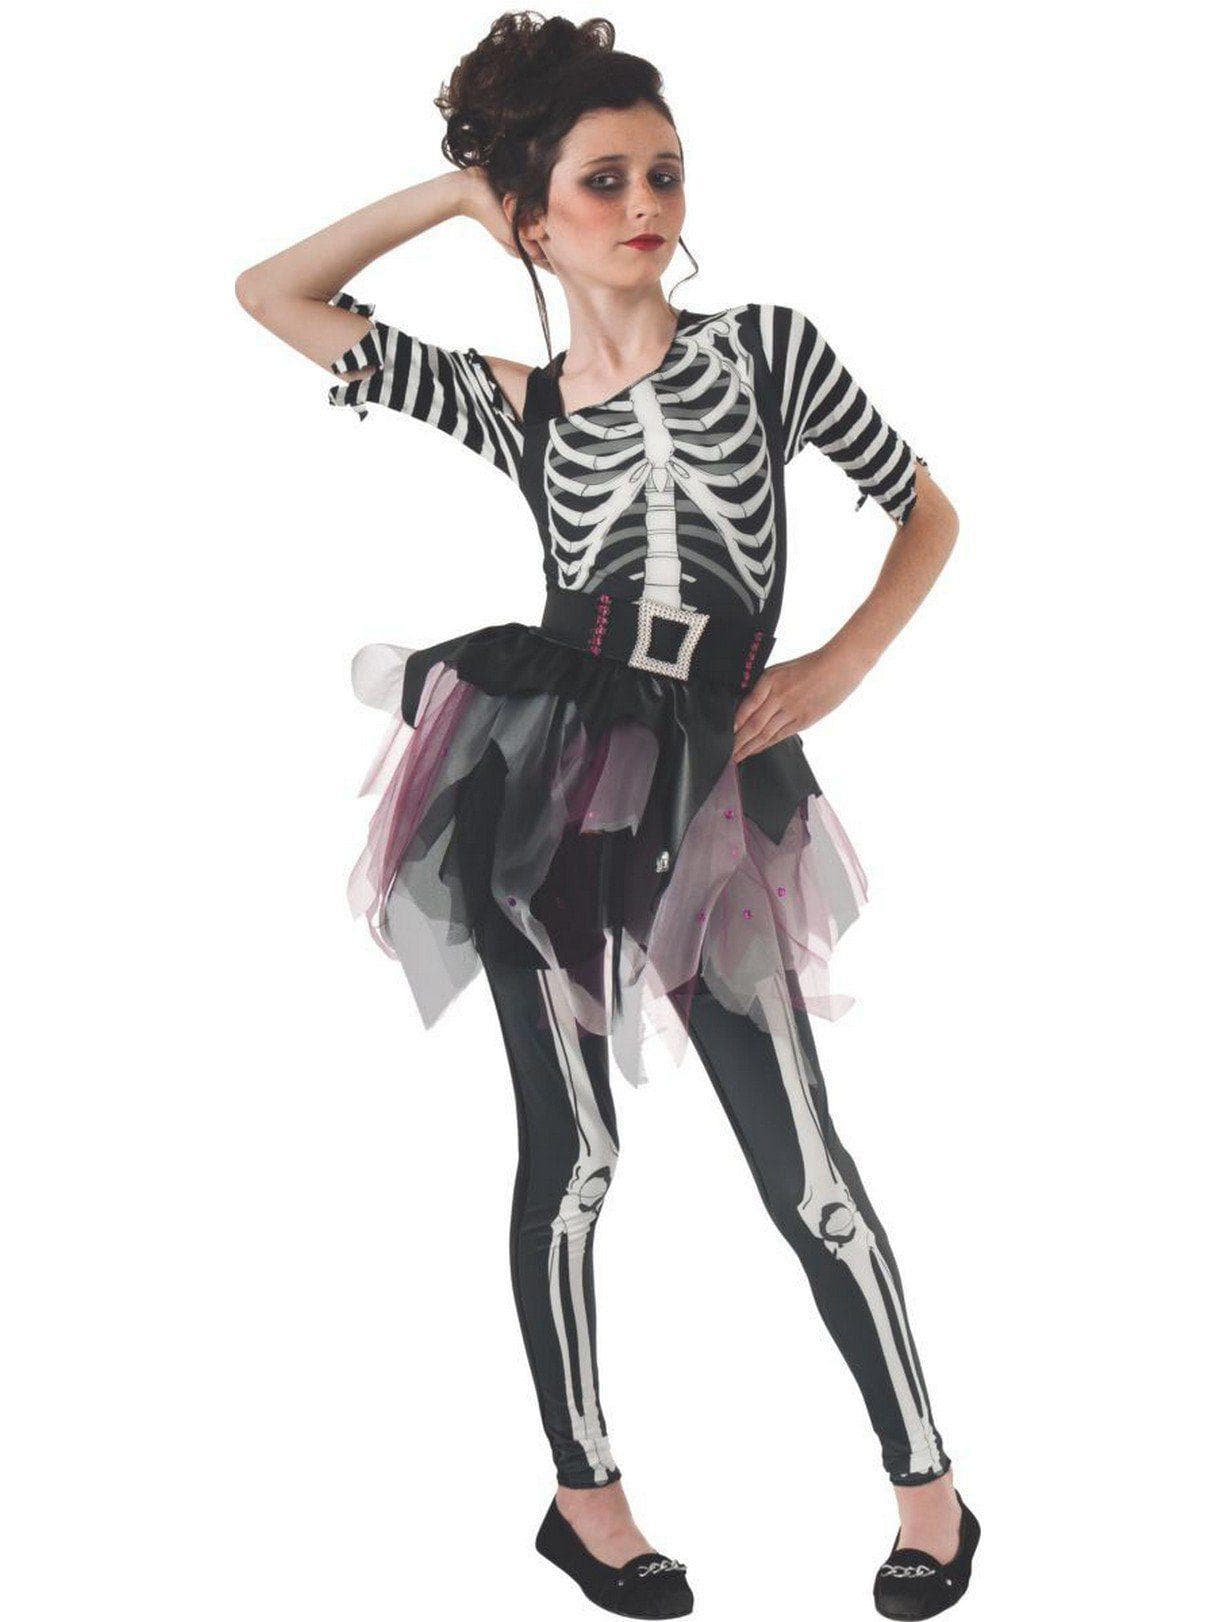 Kids Skelee Ballerina Costume - costumes.com